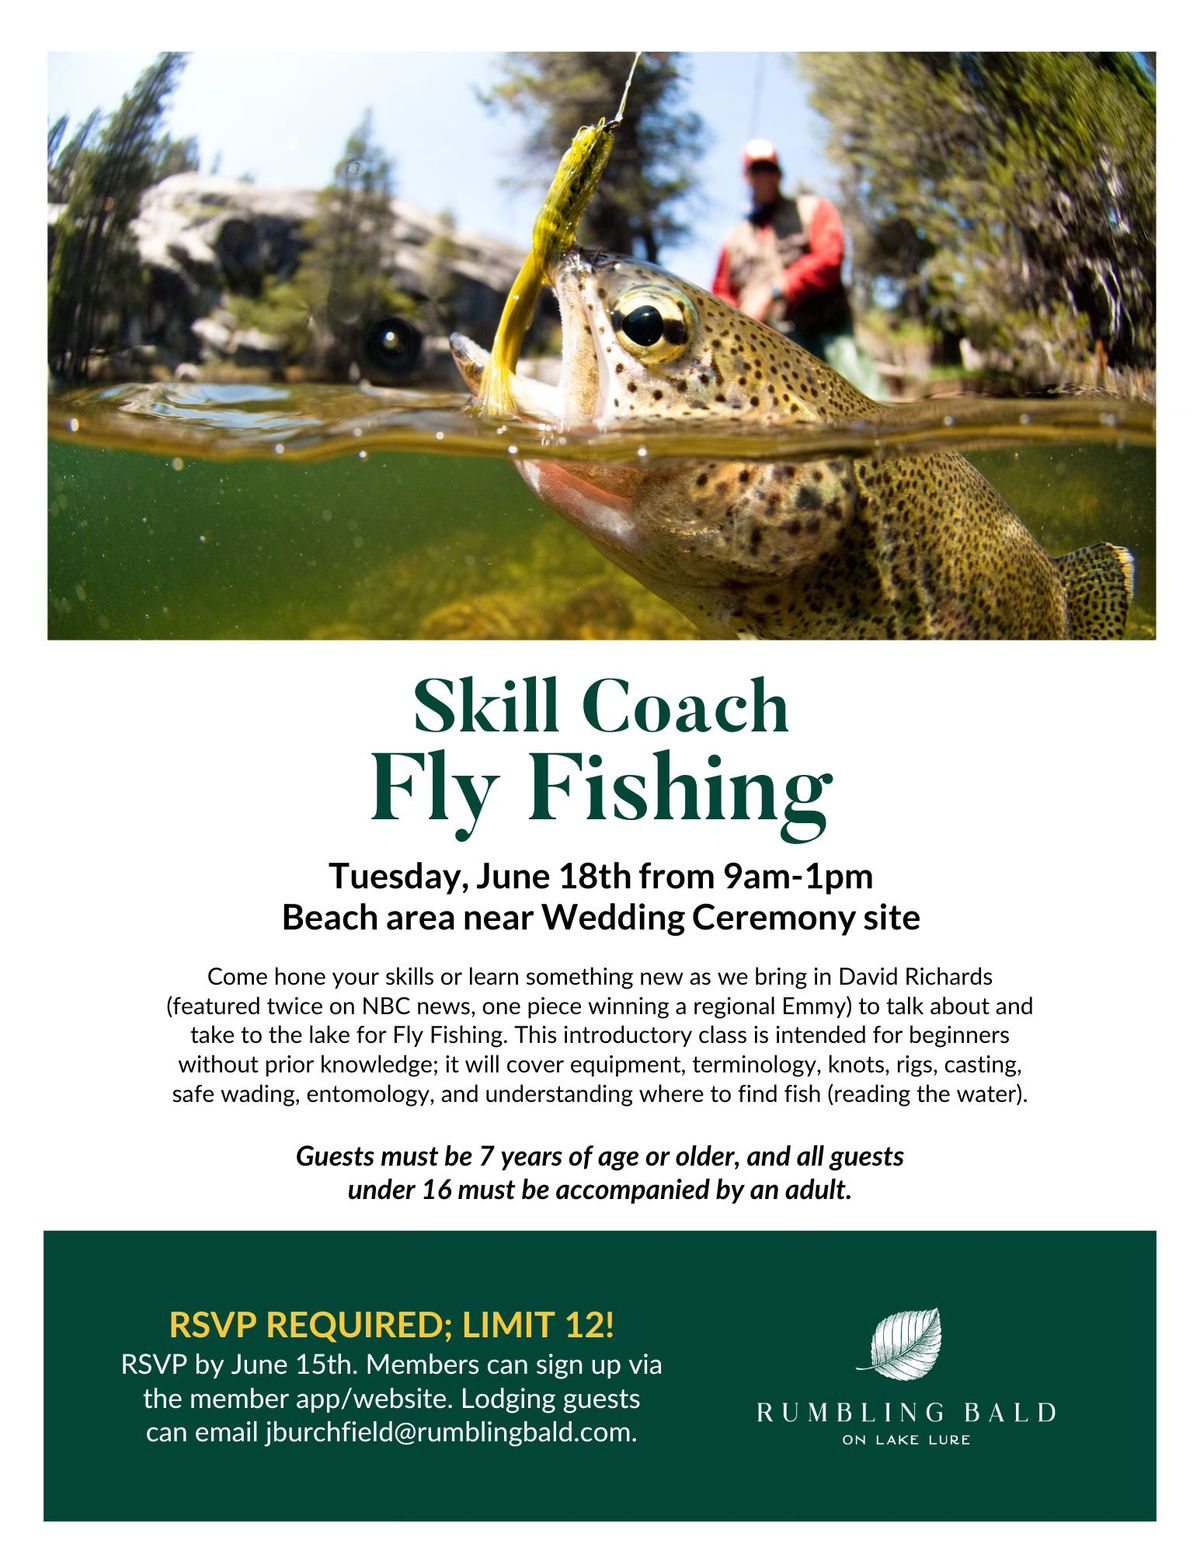 Skill Coach - Fly Fishing